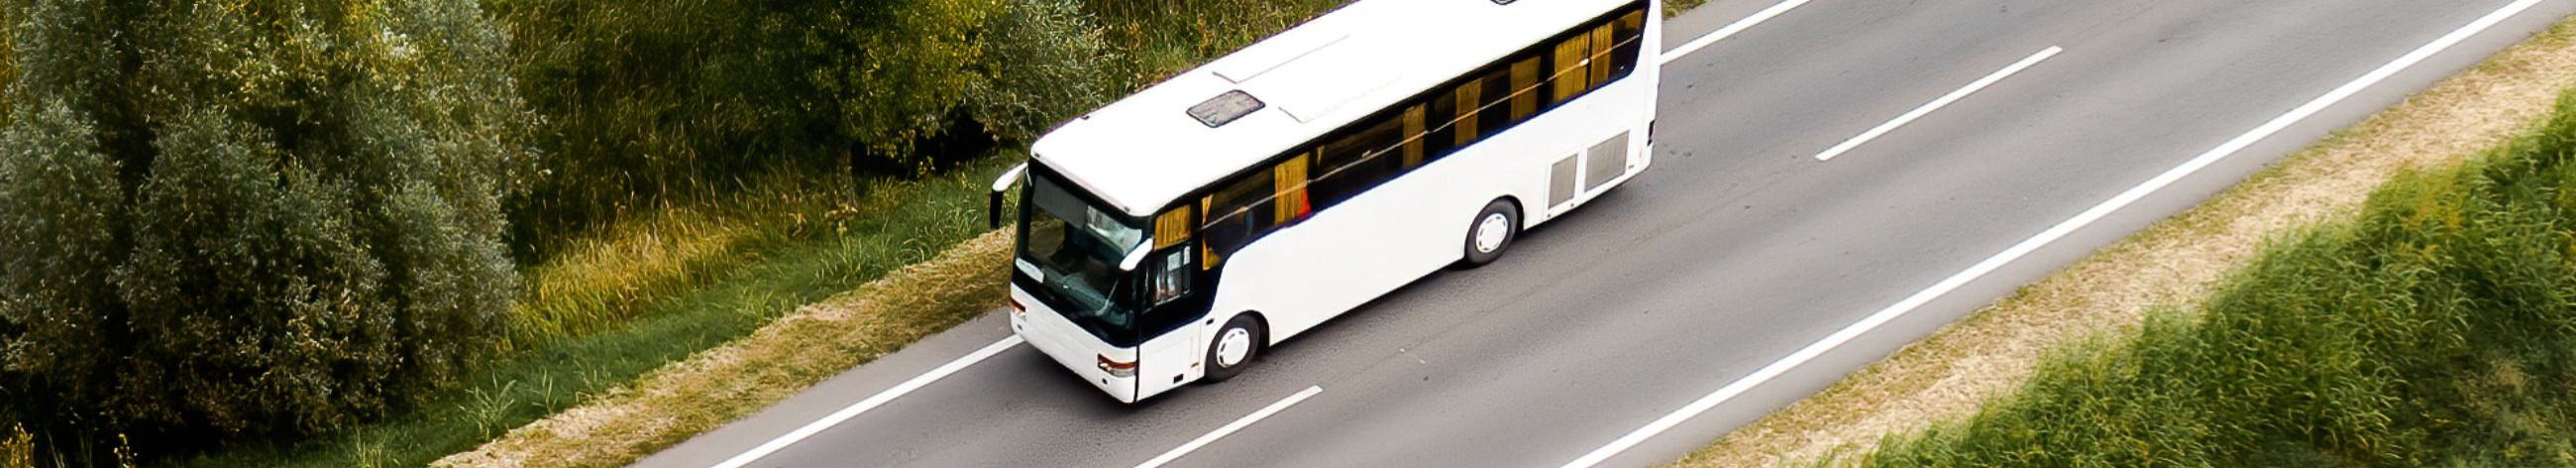 Tegeleme reisiteenuste pakkumisega, sealhulgas bussireisid, bussi rent, grupireisid ja kohandatavad reisipaketid.